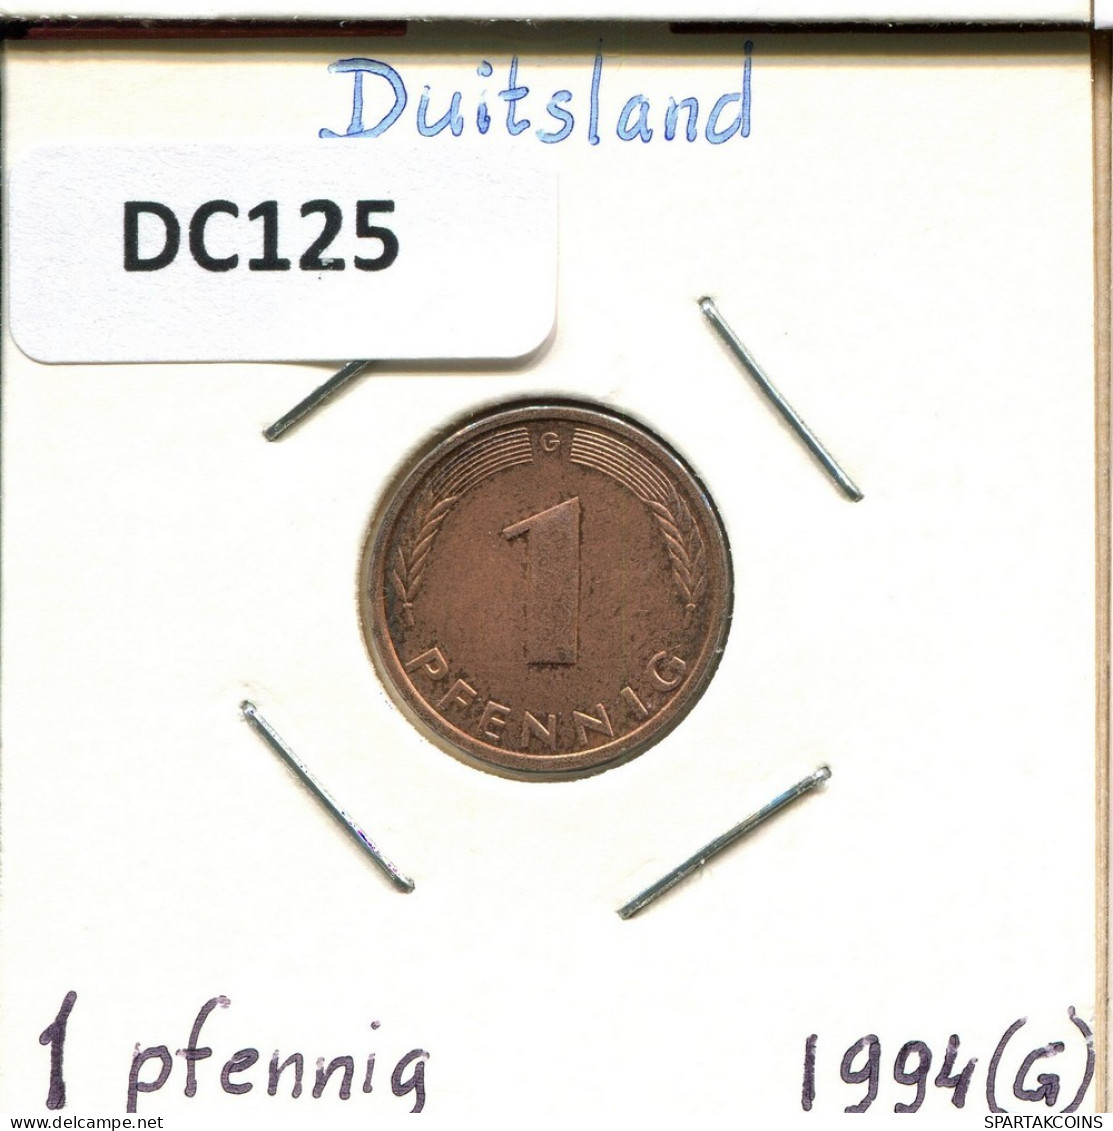 1 PFENNIG 1994 G BRD ALEMANIA Moneda GERMANY #DC125.E.A - 1 Pfennig